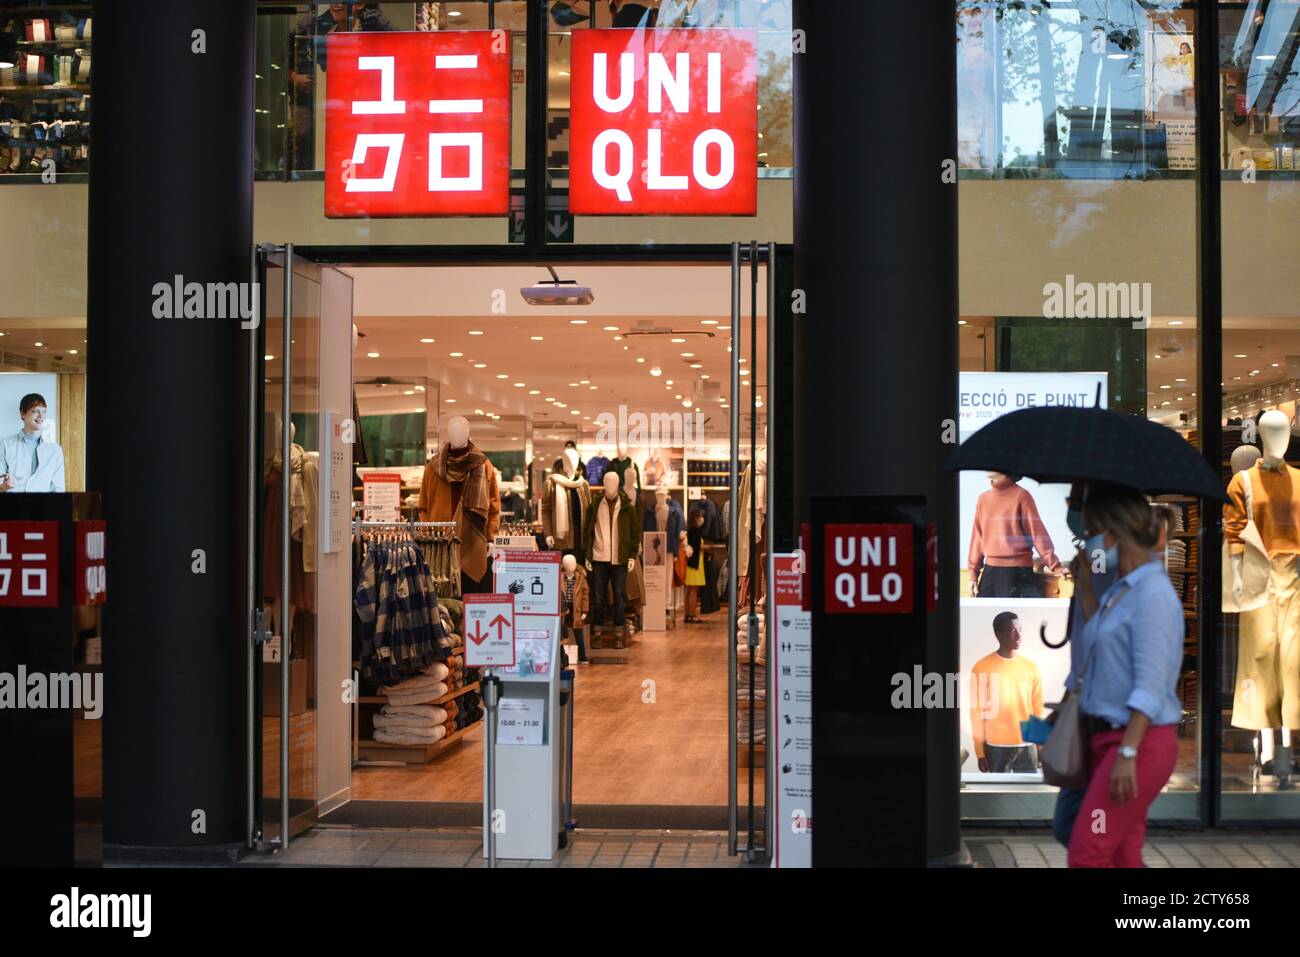 Barcelona, Spanien. September 2020. Ein Uniqlo-Logo in einem ihrer  Geschäfte. Quelle: Jorge Sanz/SOPA Images/ZUMA Wire/Alamy Live News  Stockfotografie - Alamy